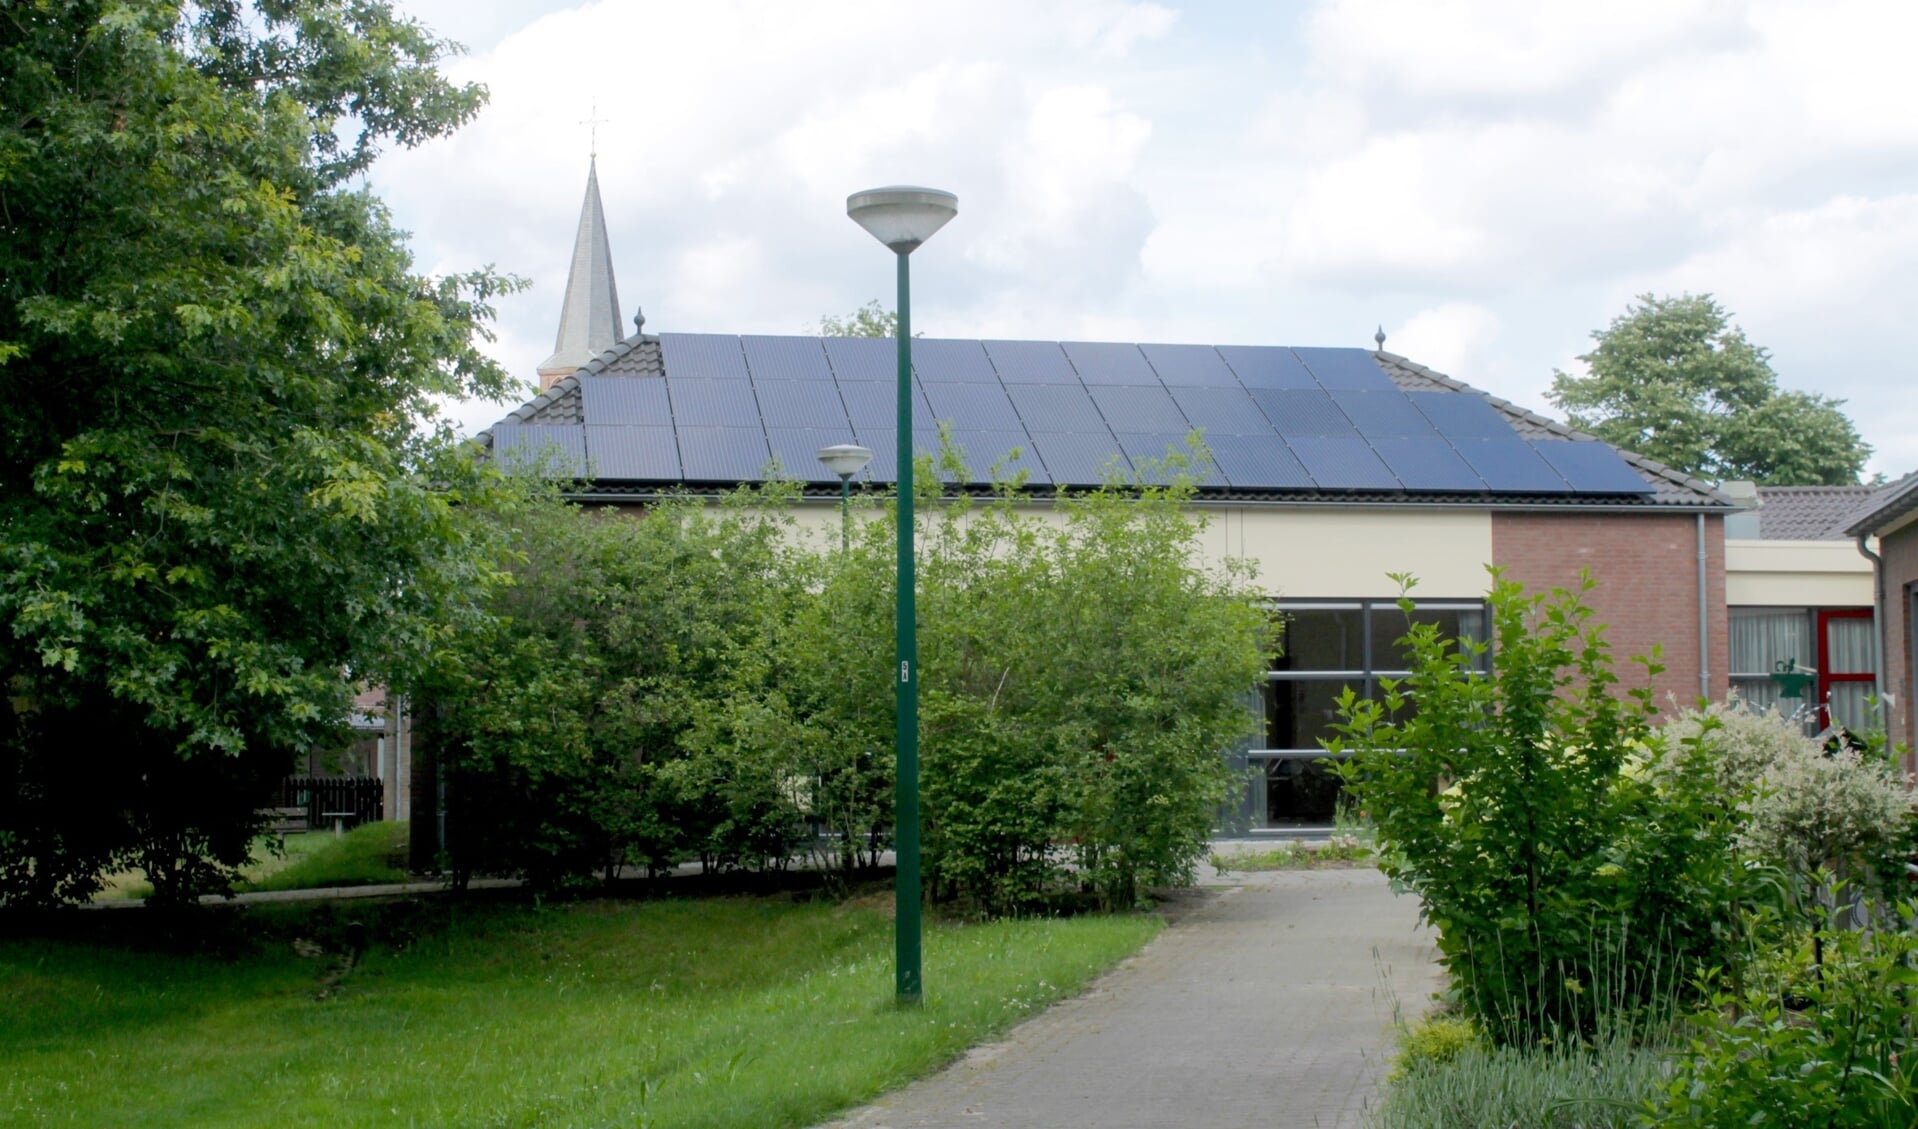 Zonnepanelen op het dorpshuis in Ledeacker. Alle geschikte daken volleggen met zonnepanelen is bij lange na niet voldoende om als gemeente energieneutraal te worden. (tekst en foto: Kees de Bruijn)